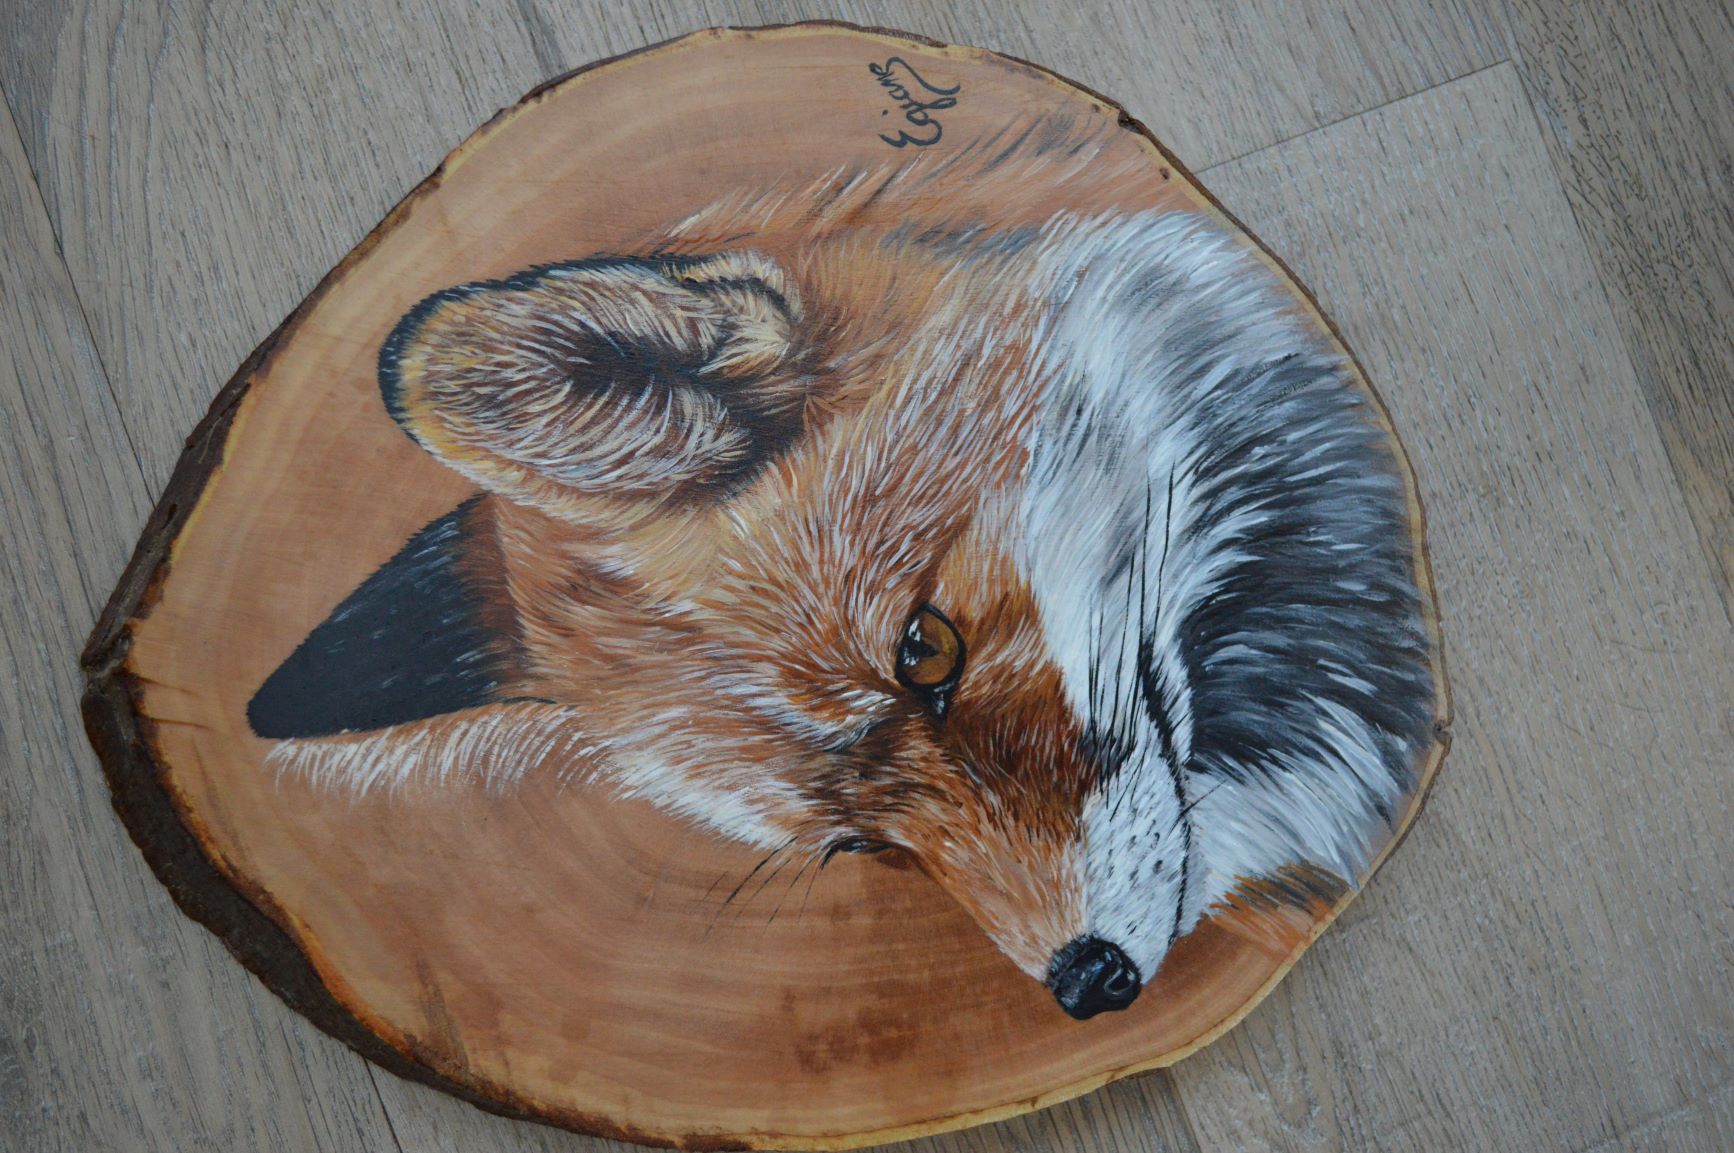 renard, peinture acrylique sur bois